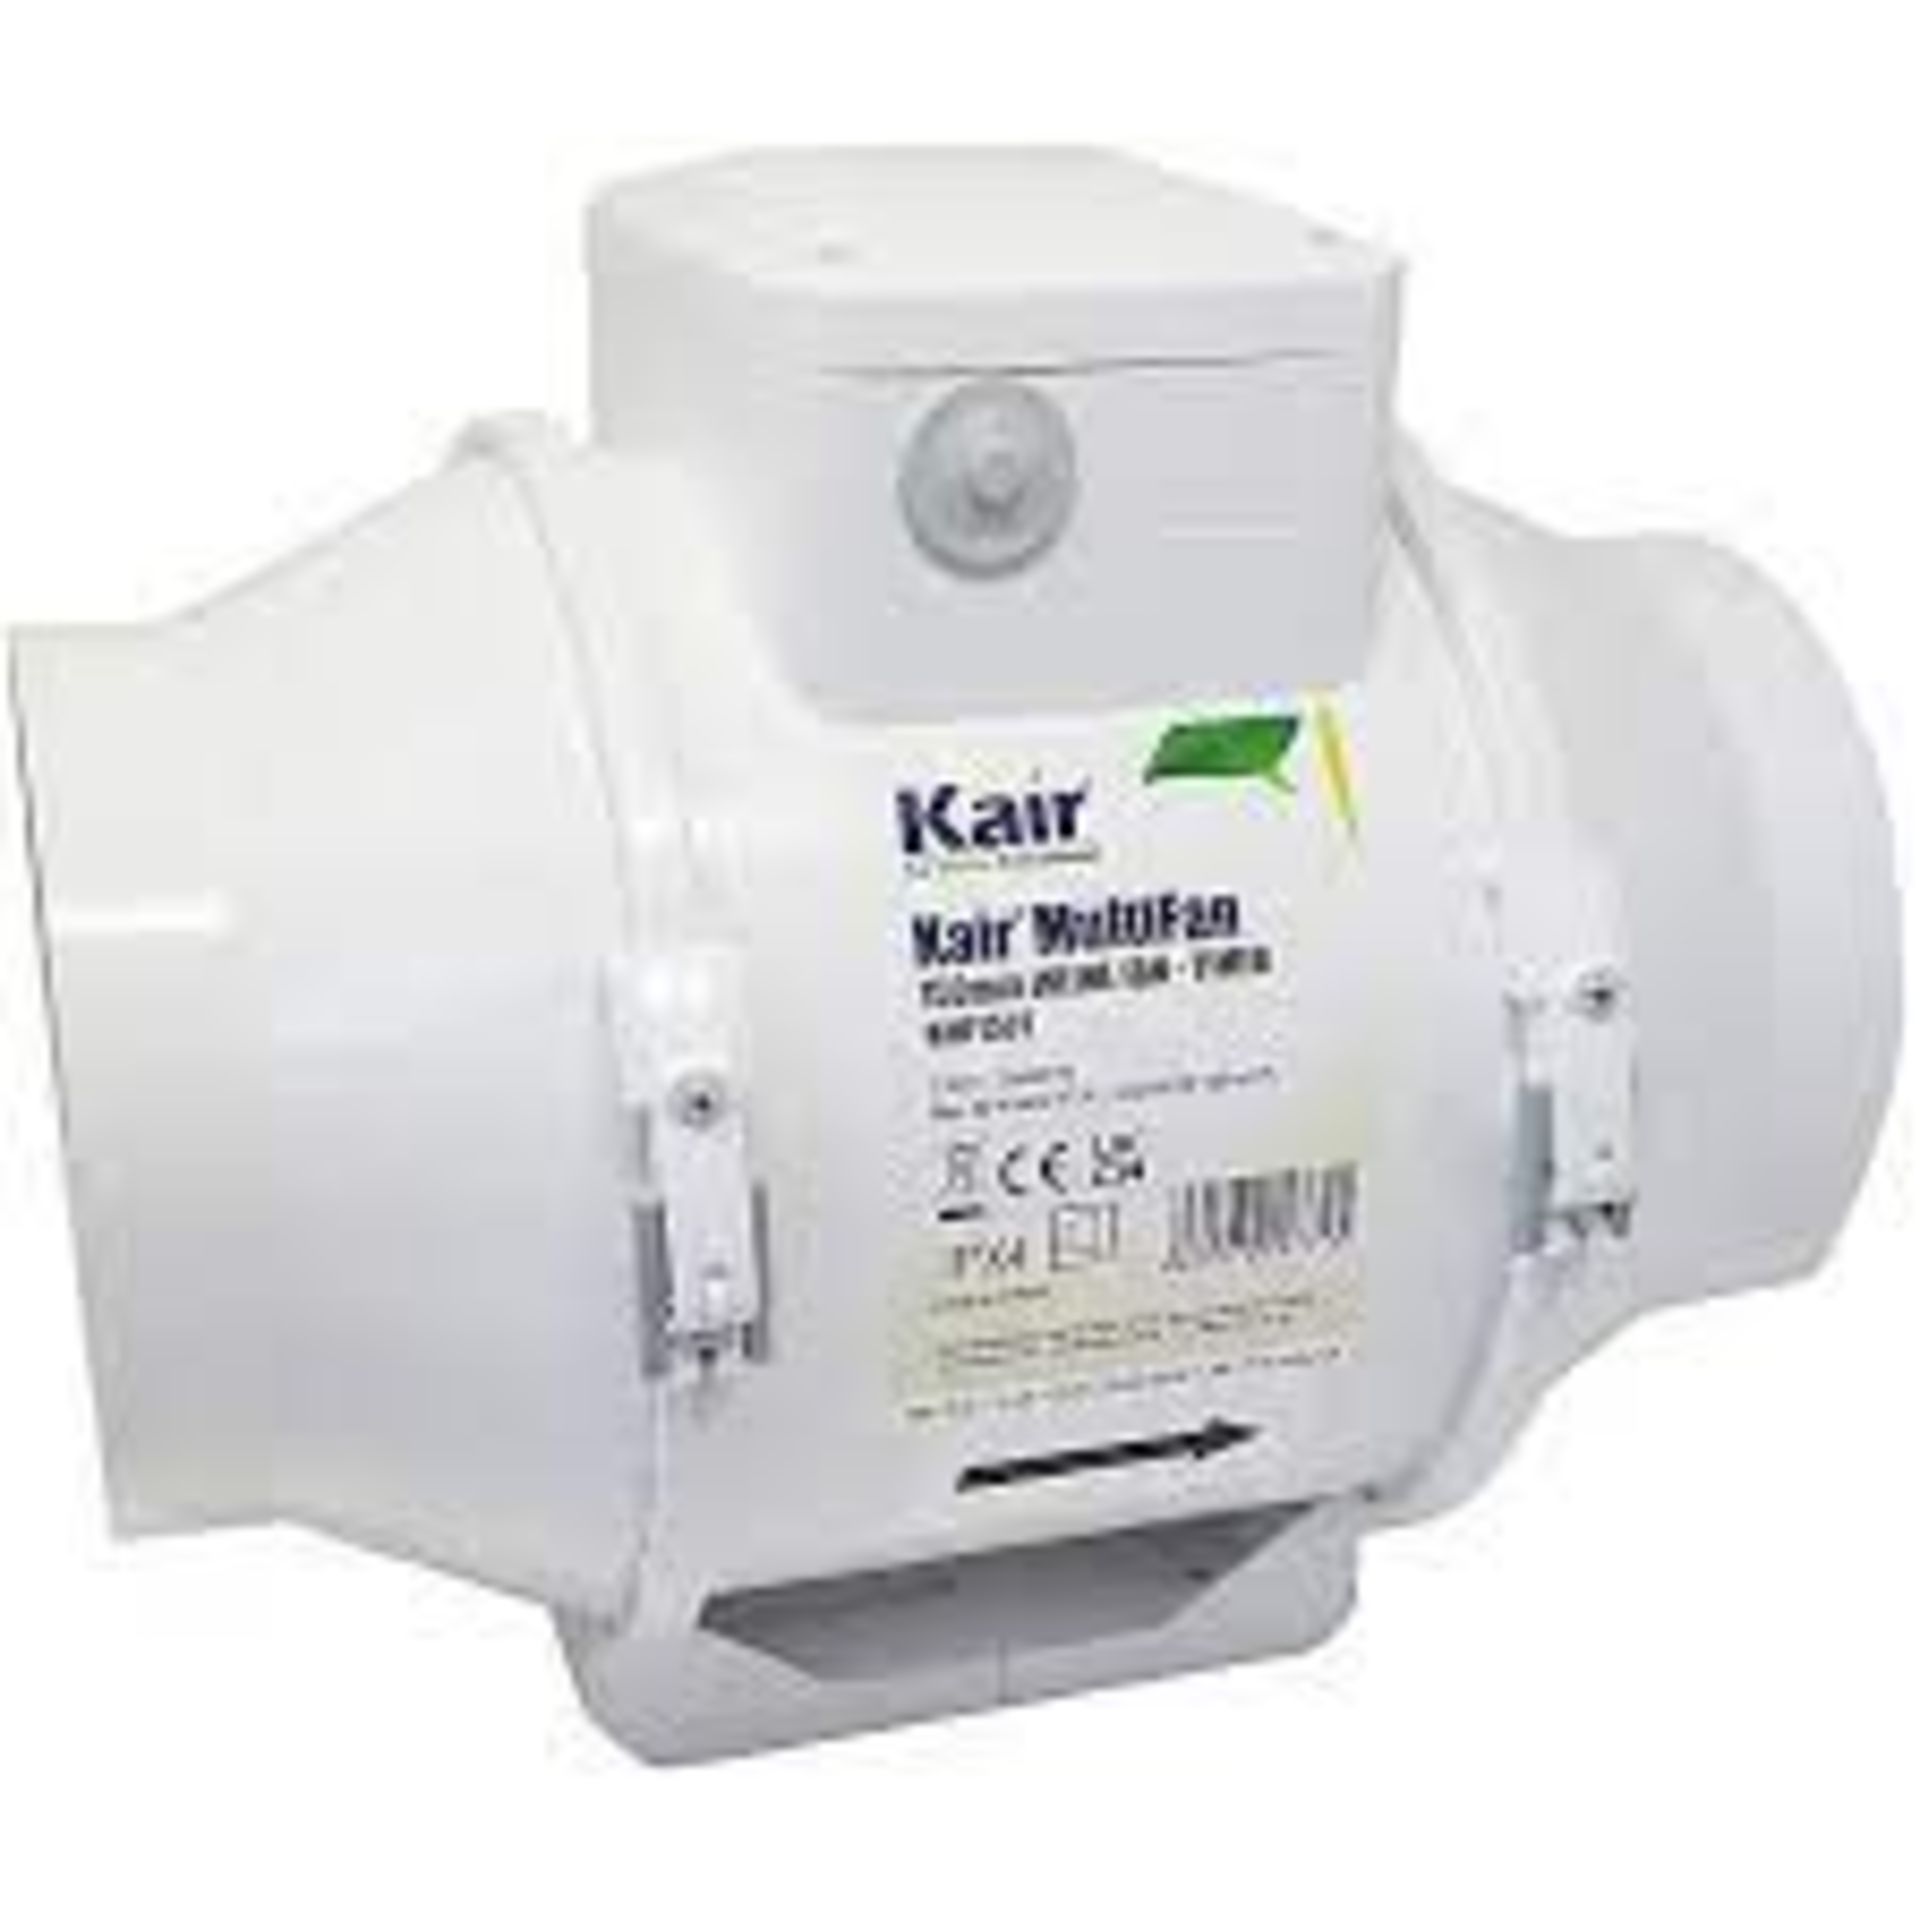 Kair MultiFan 150mm In Line Fan with Timer - R14.14.